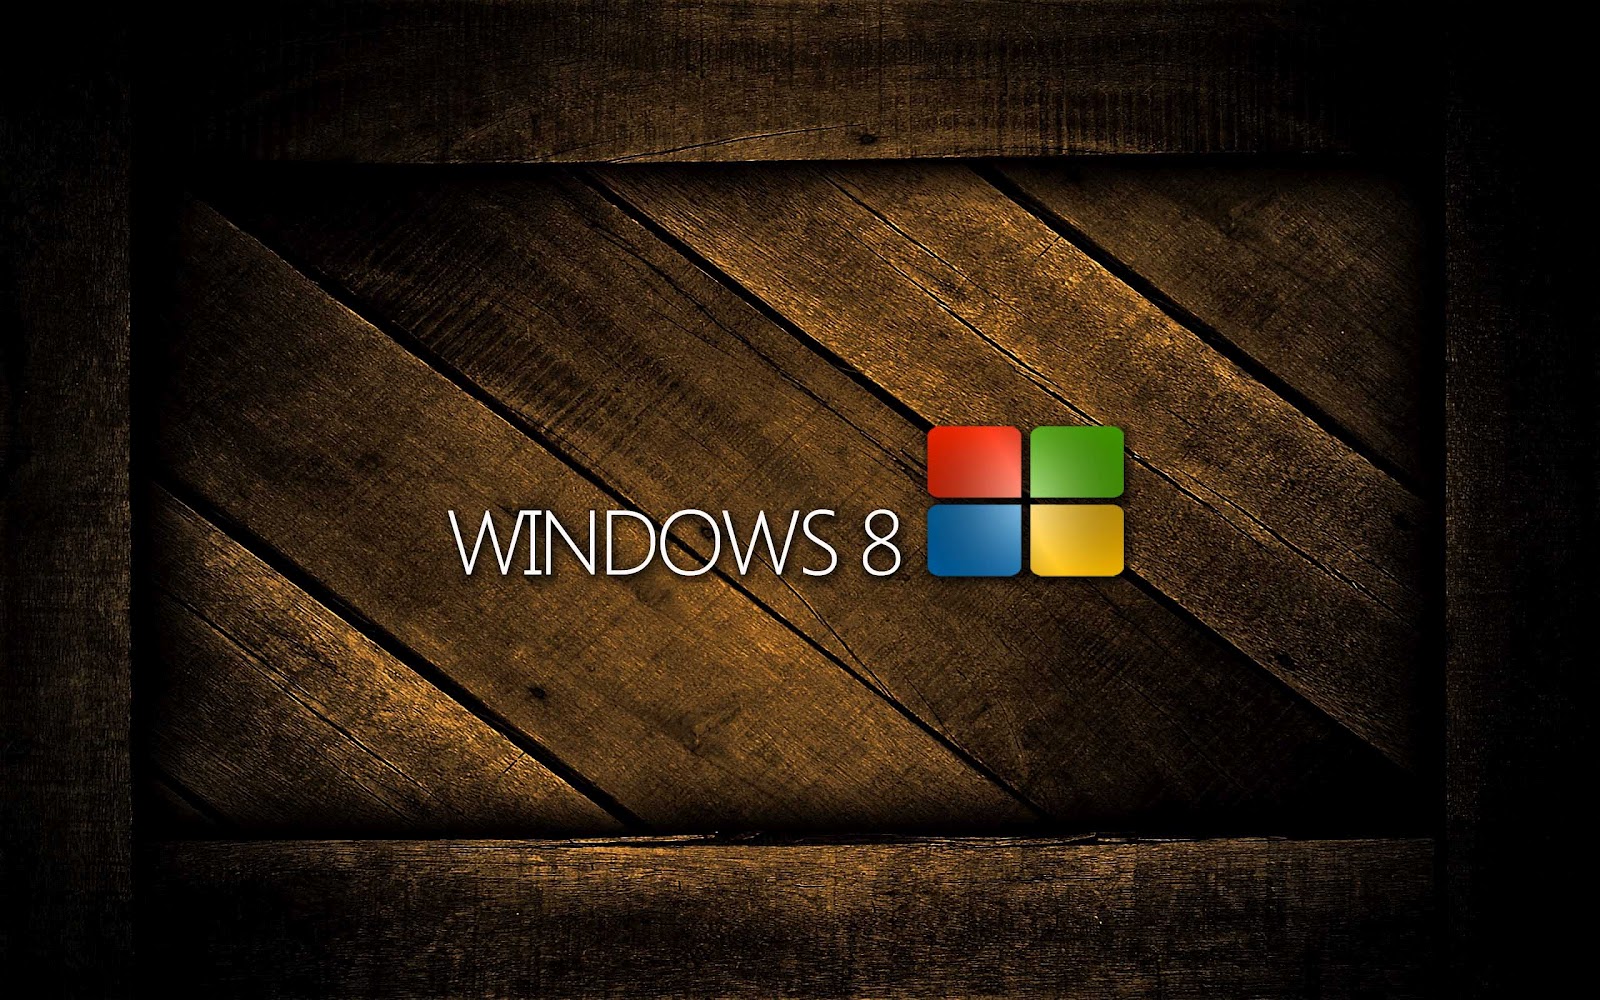 Bruine Windows 8 wallpaper met houten achtergrond